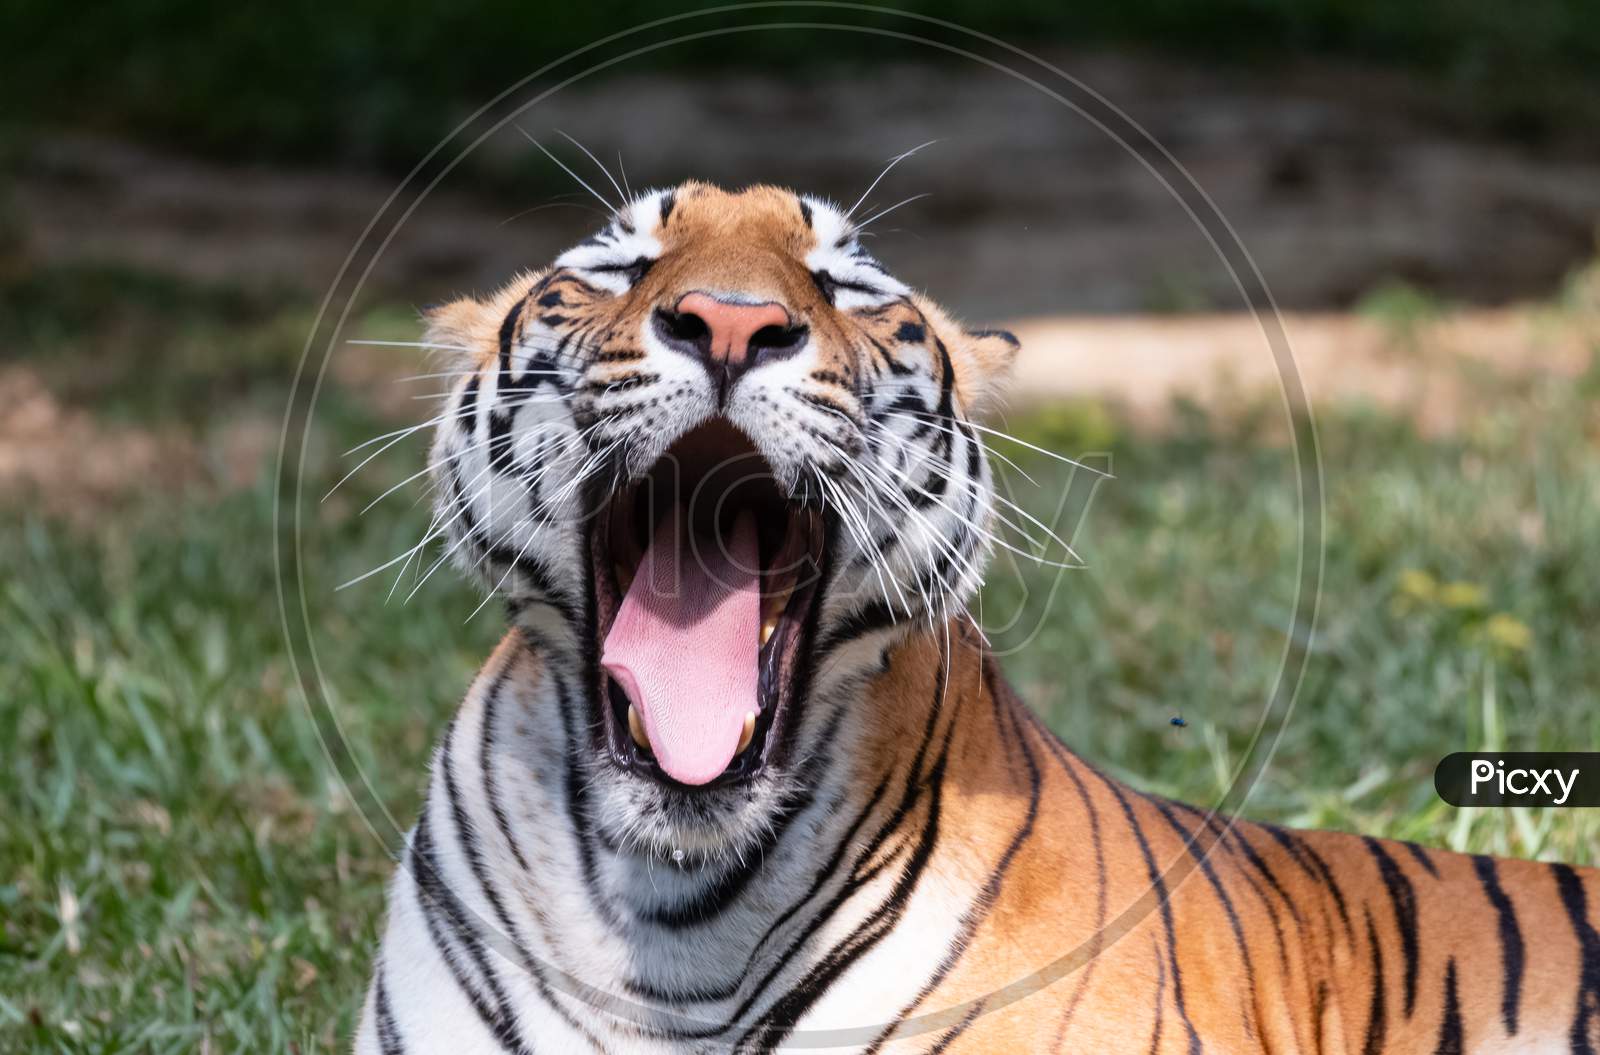 Royal Bengal Tiger in Natural habitat